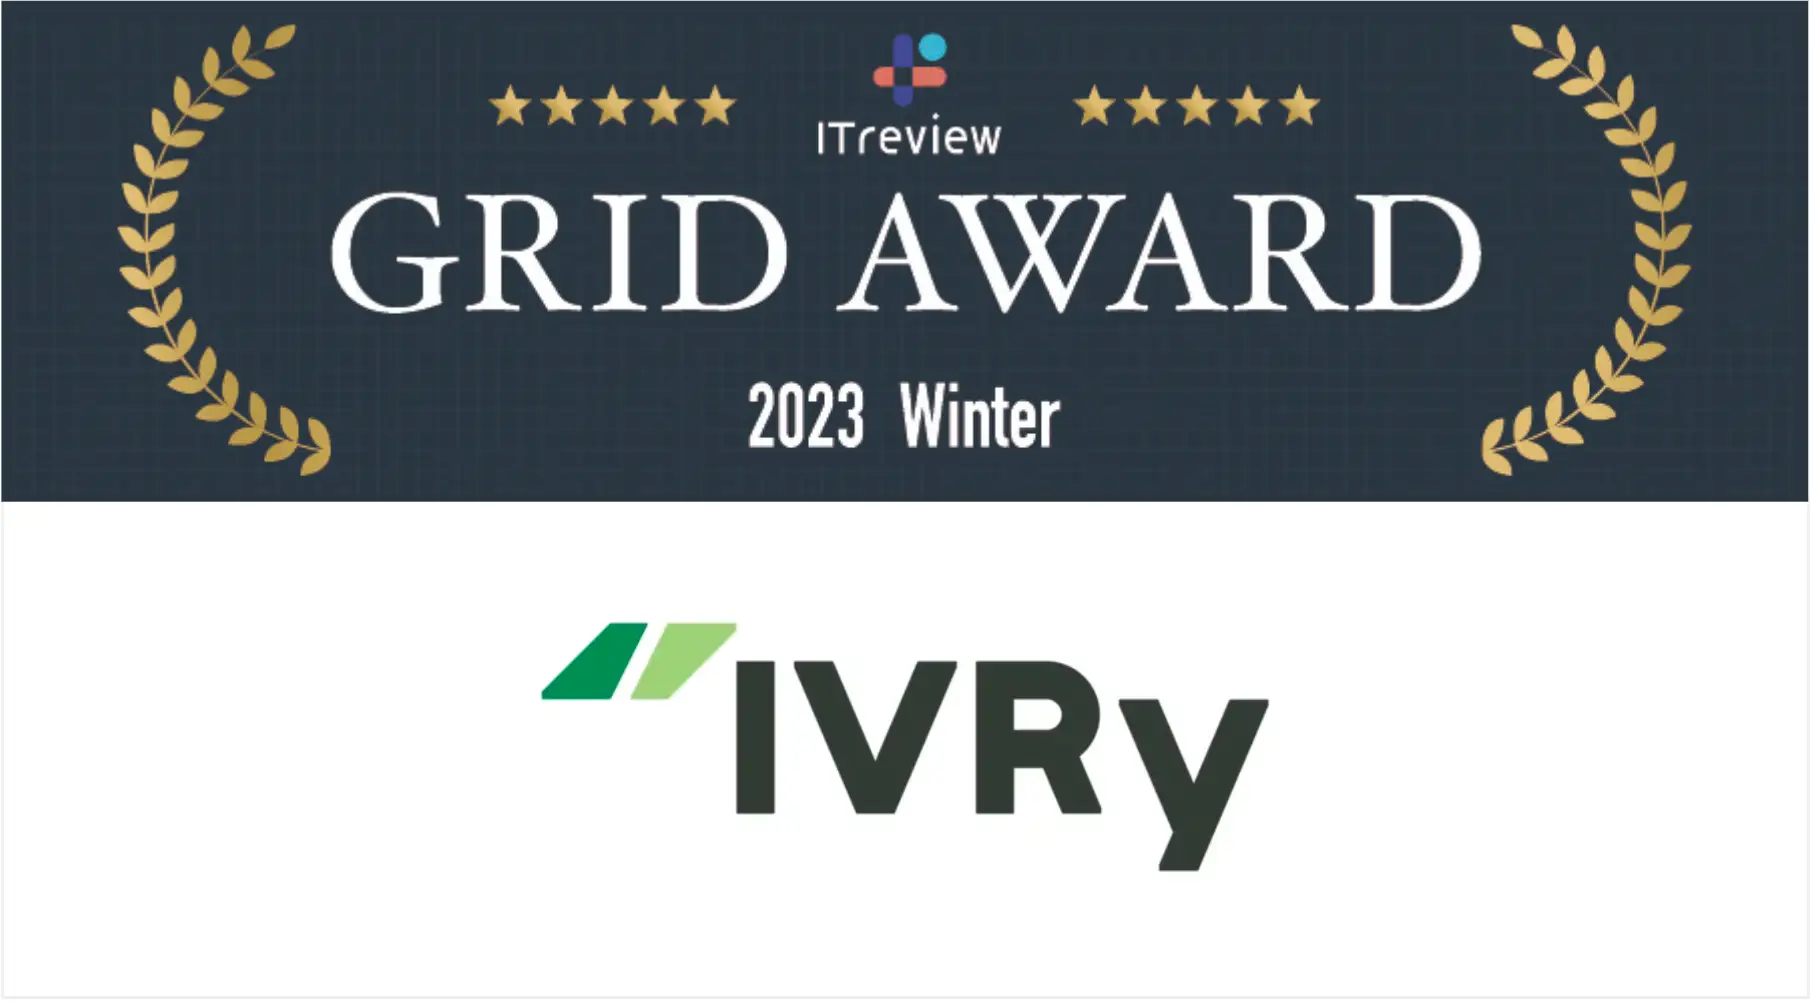 電話自動応答サービス「IVRy」がITreview Grid Award 2023 Winter 2部門で最高位「Leader」および「High Performer」を受賞